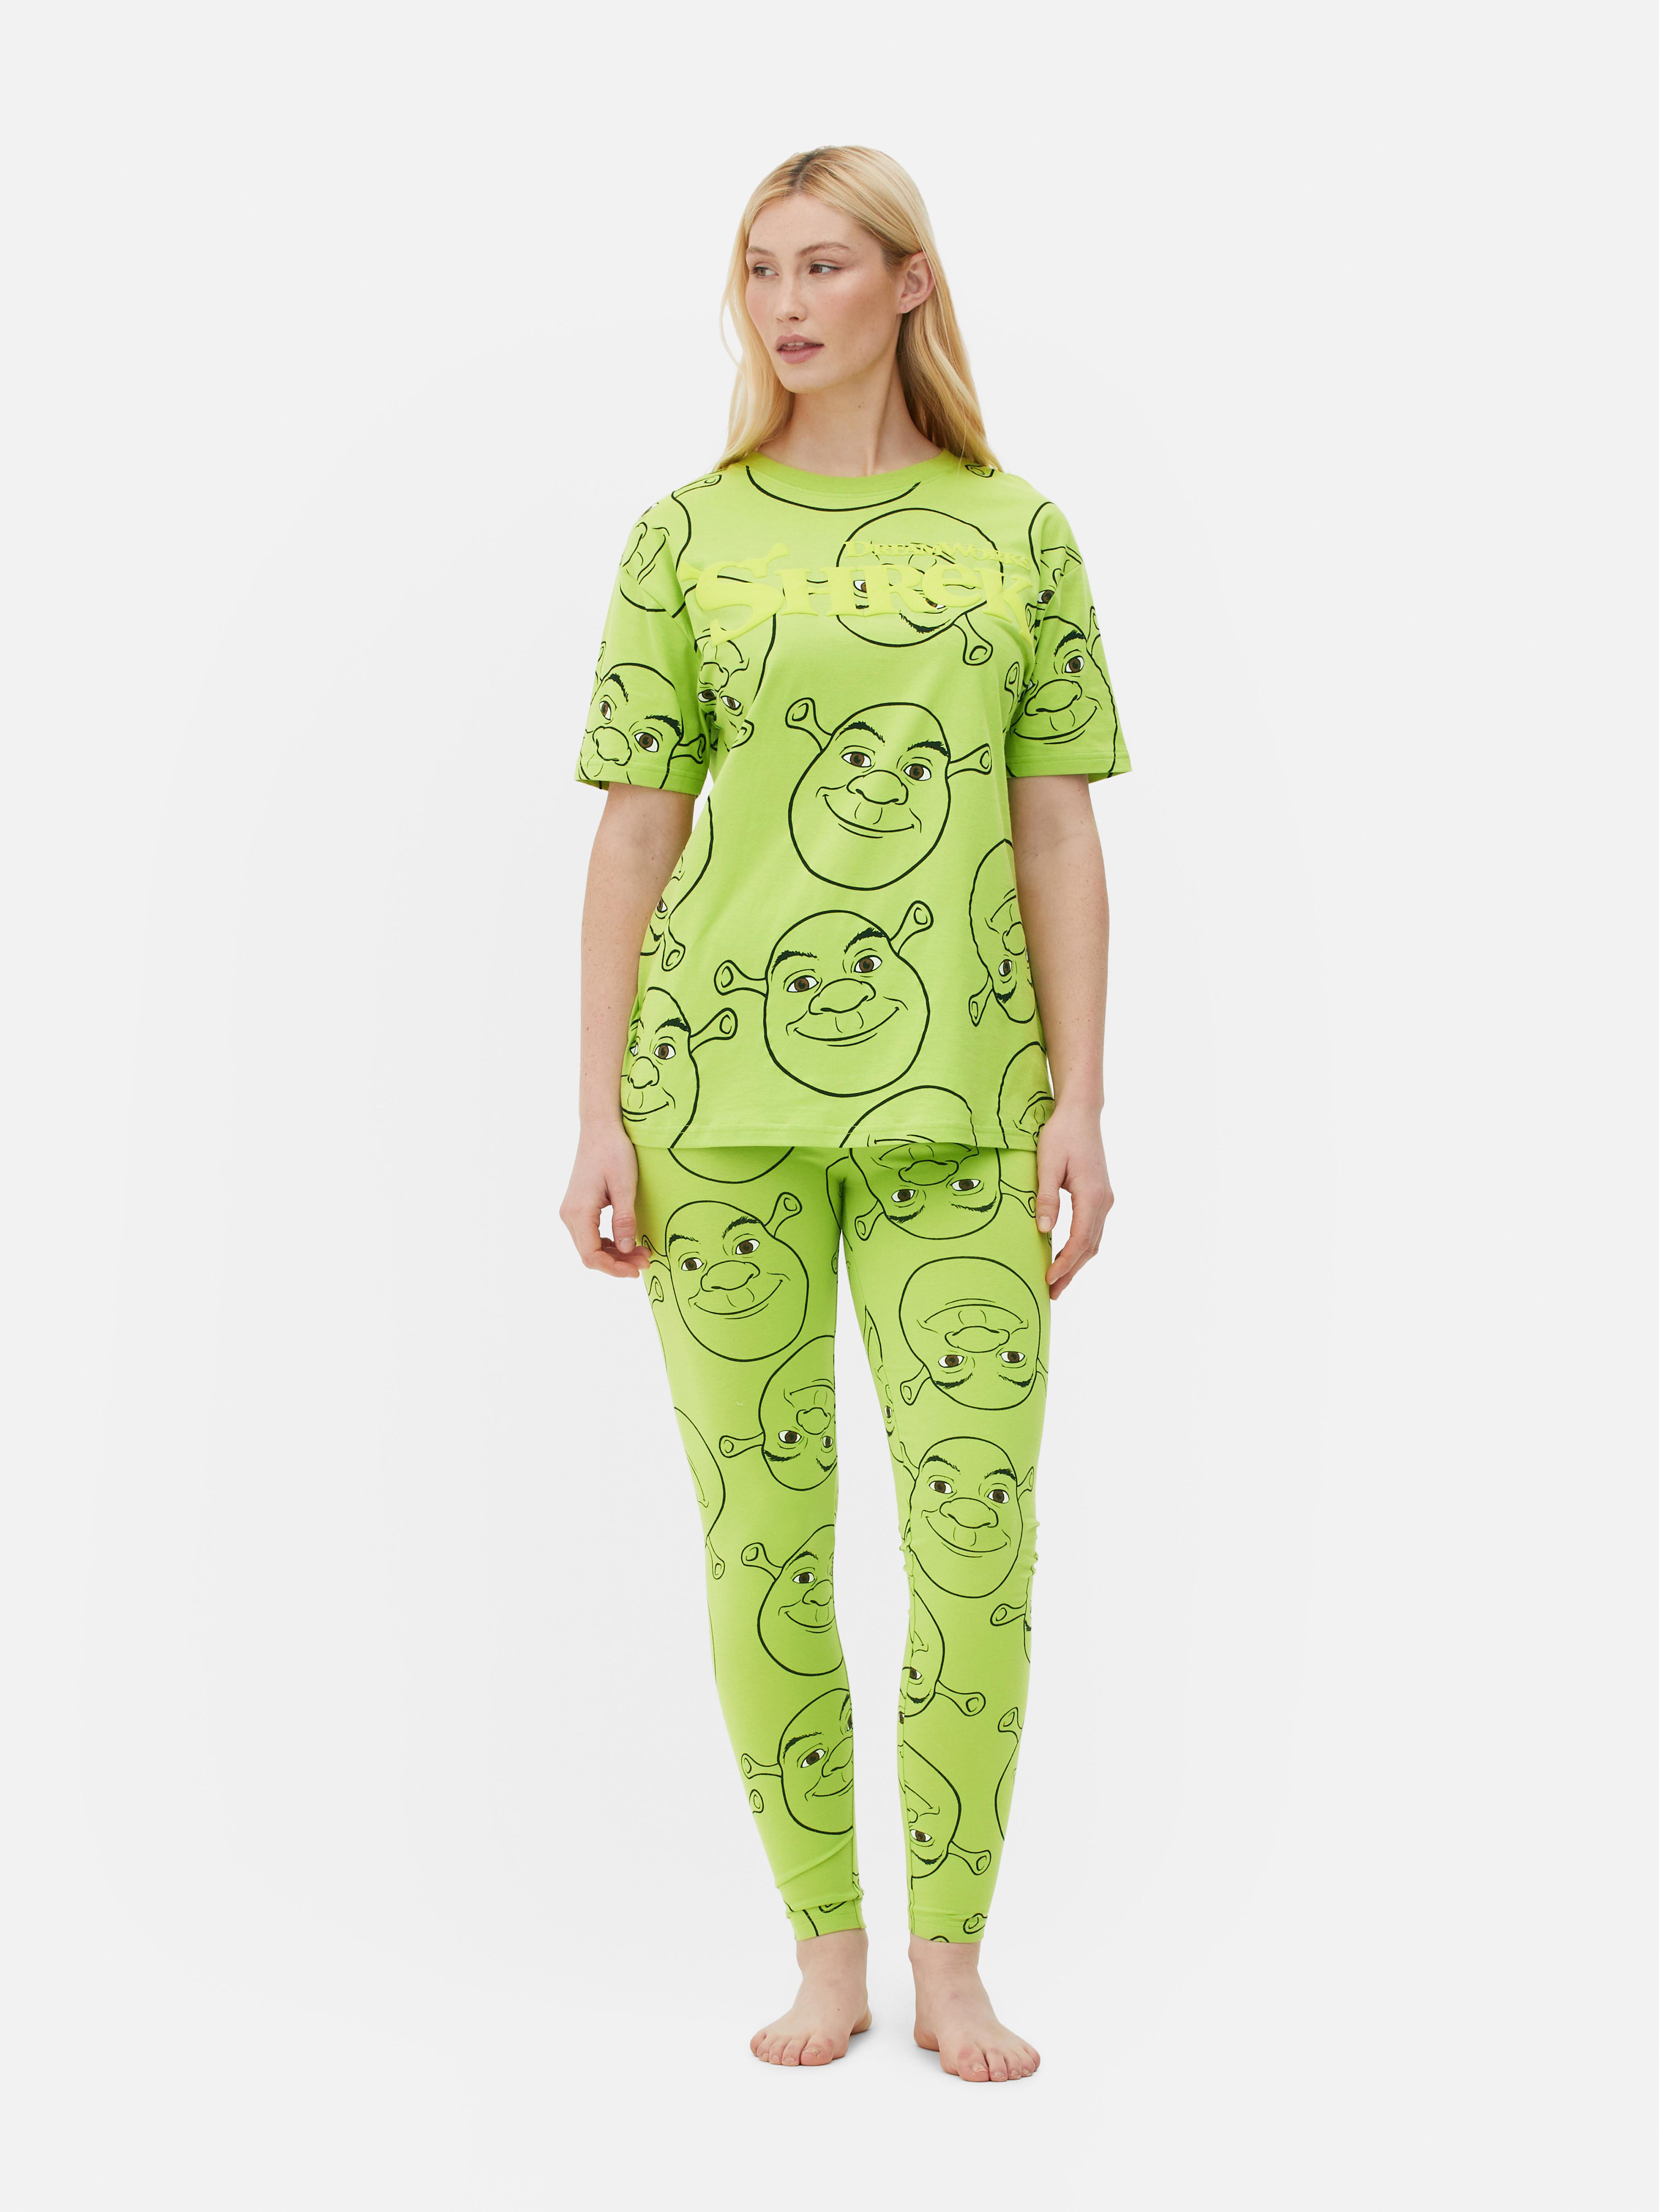 T-shirt pijama comprida Shrek